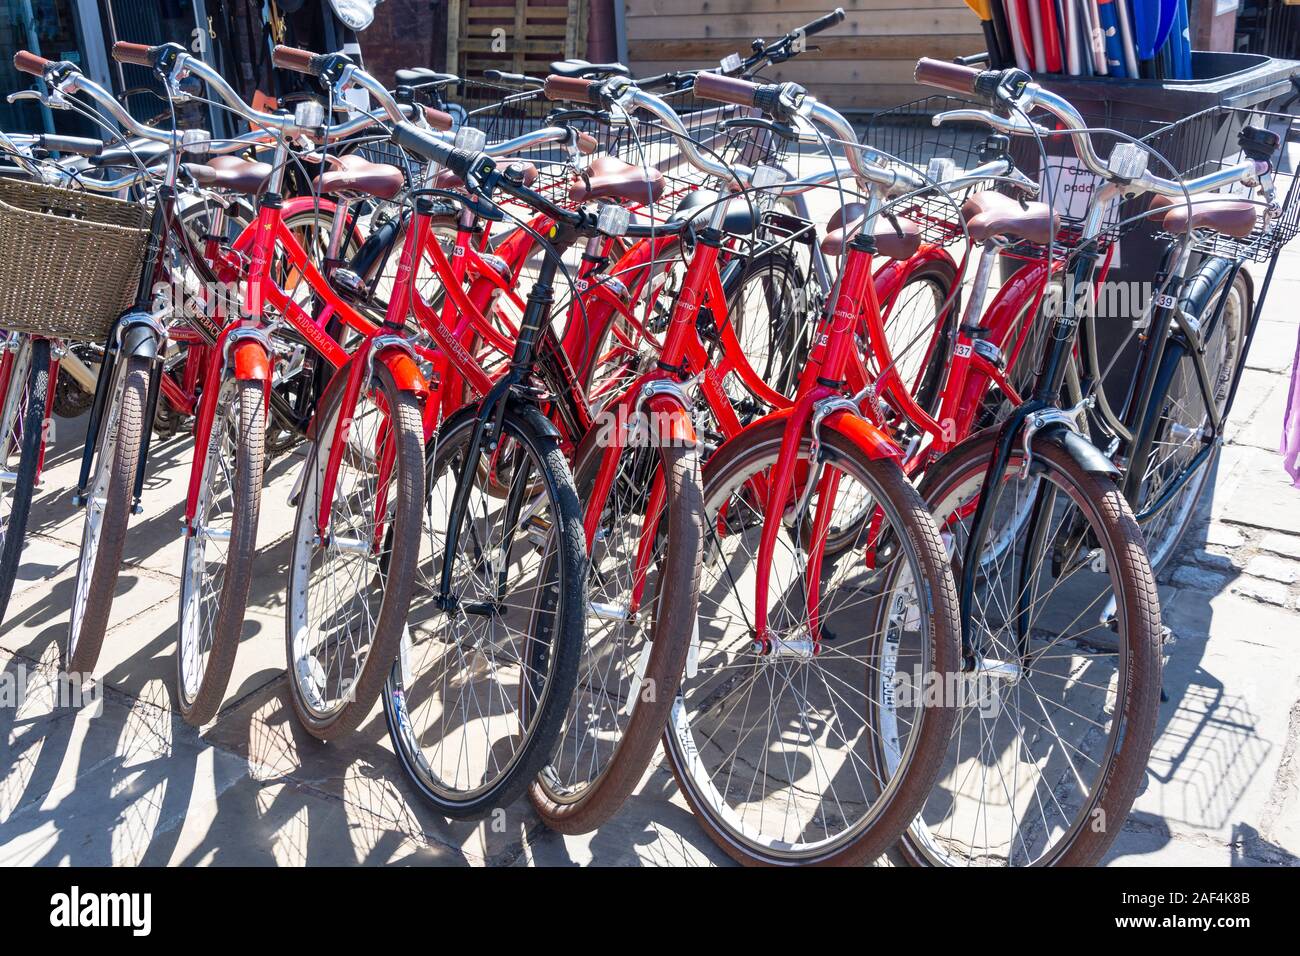 Louer des vélos à l'extérieur de magasin de location, King's Wharf, le quai, Exeter, Devon, Angleterre, Royaume-Uni Banque D'Images